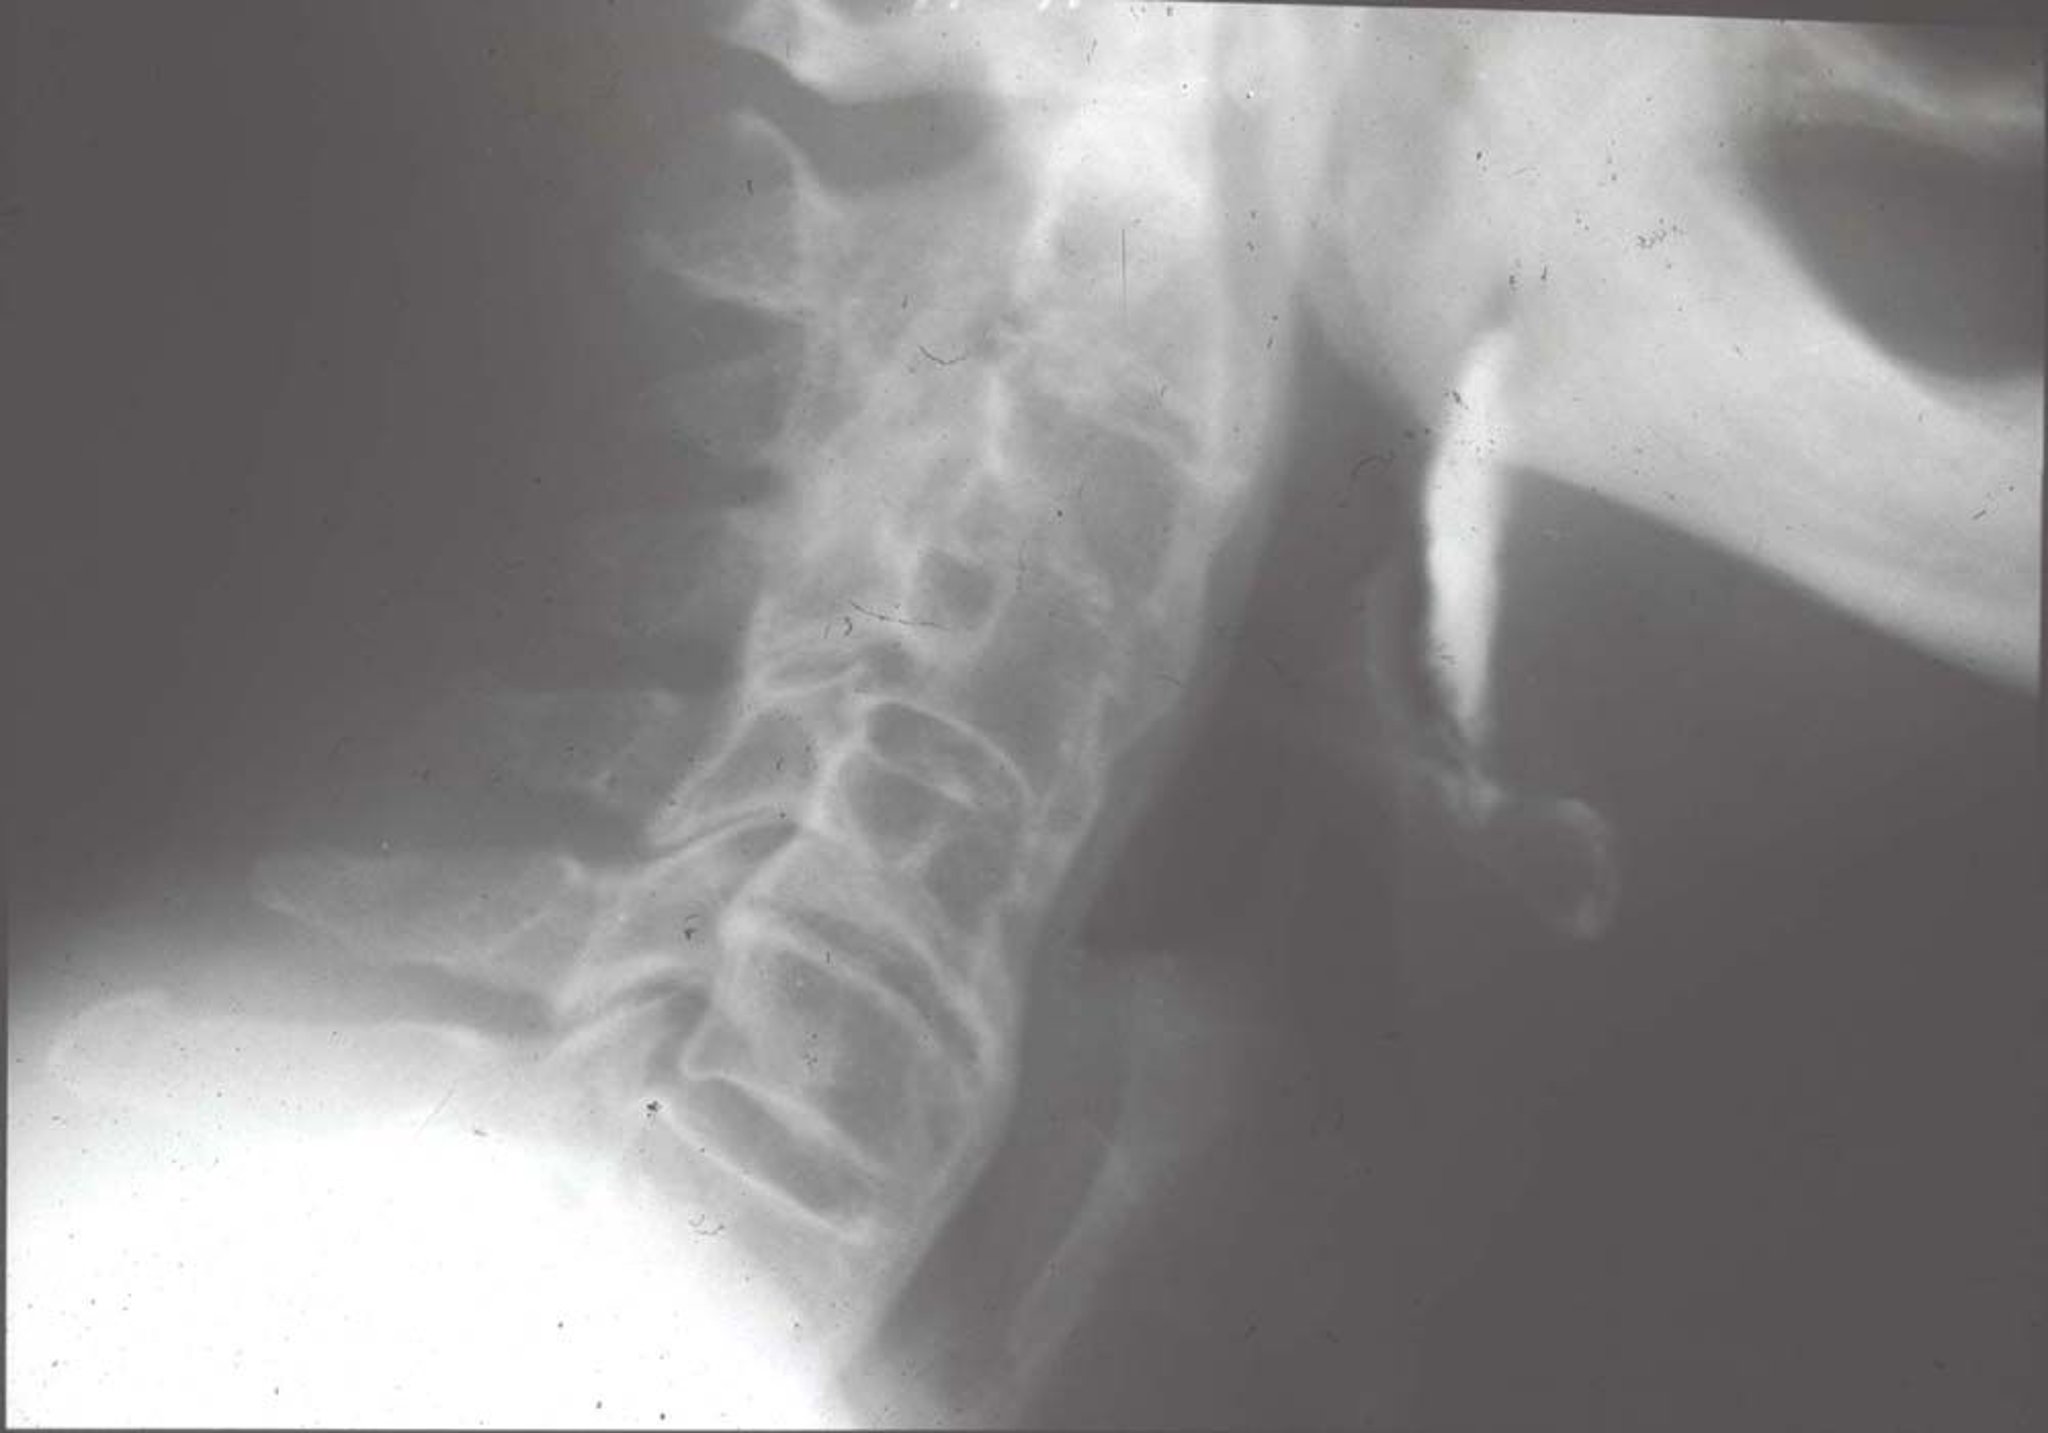 Iperostosi scheletrica idiopatica diffusa (RX)